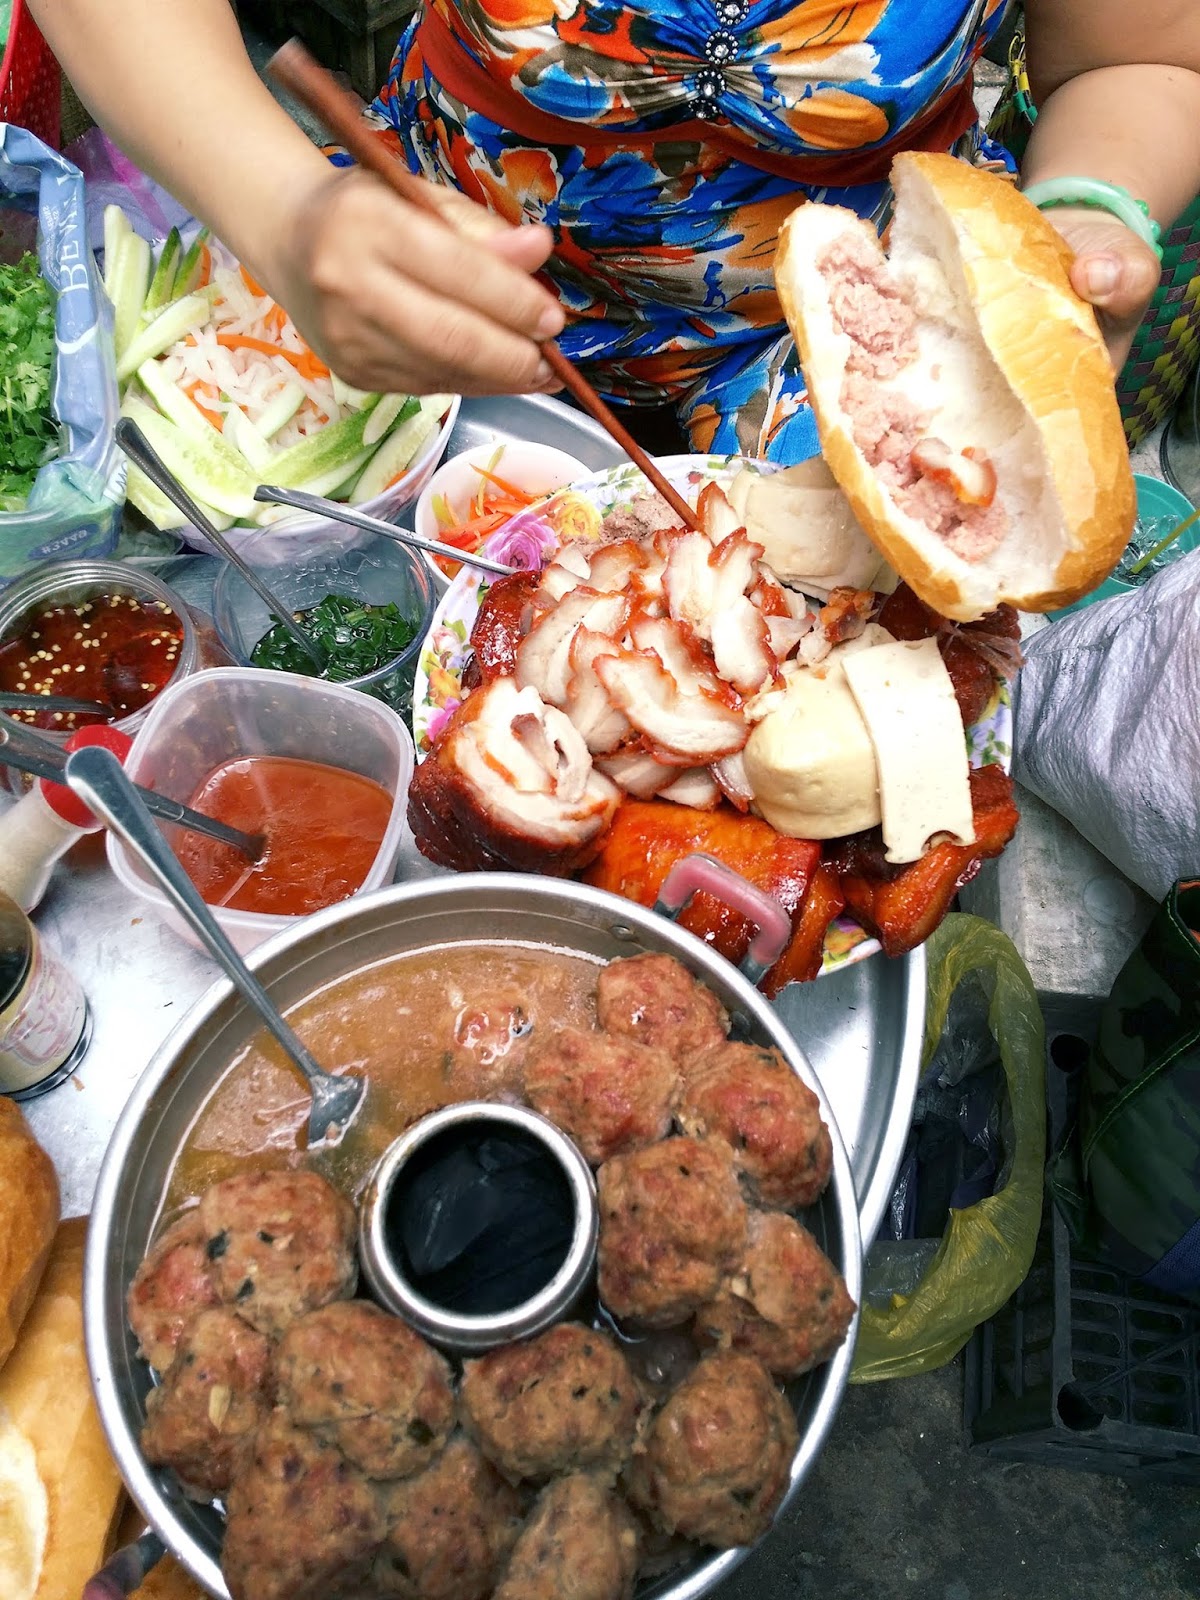 越南胡志明水产海鲜及加工展览会于今日隆重开幕-搜博网